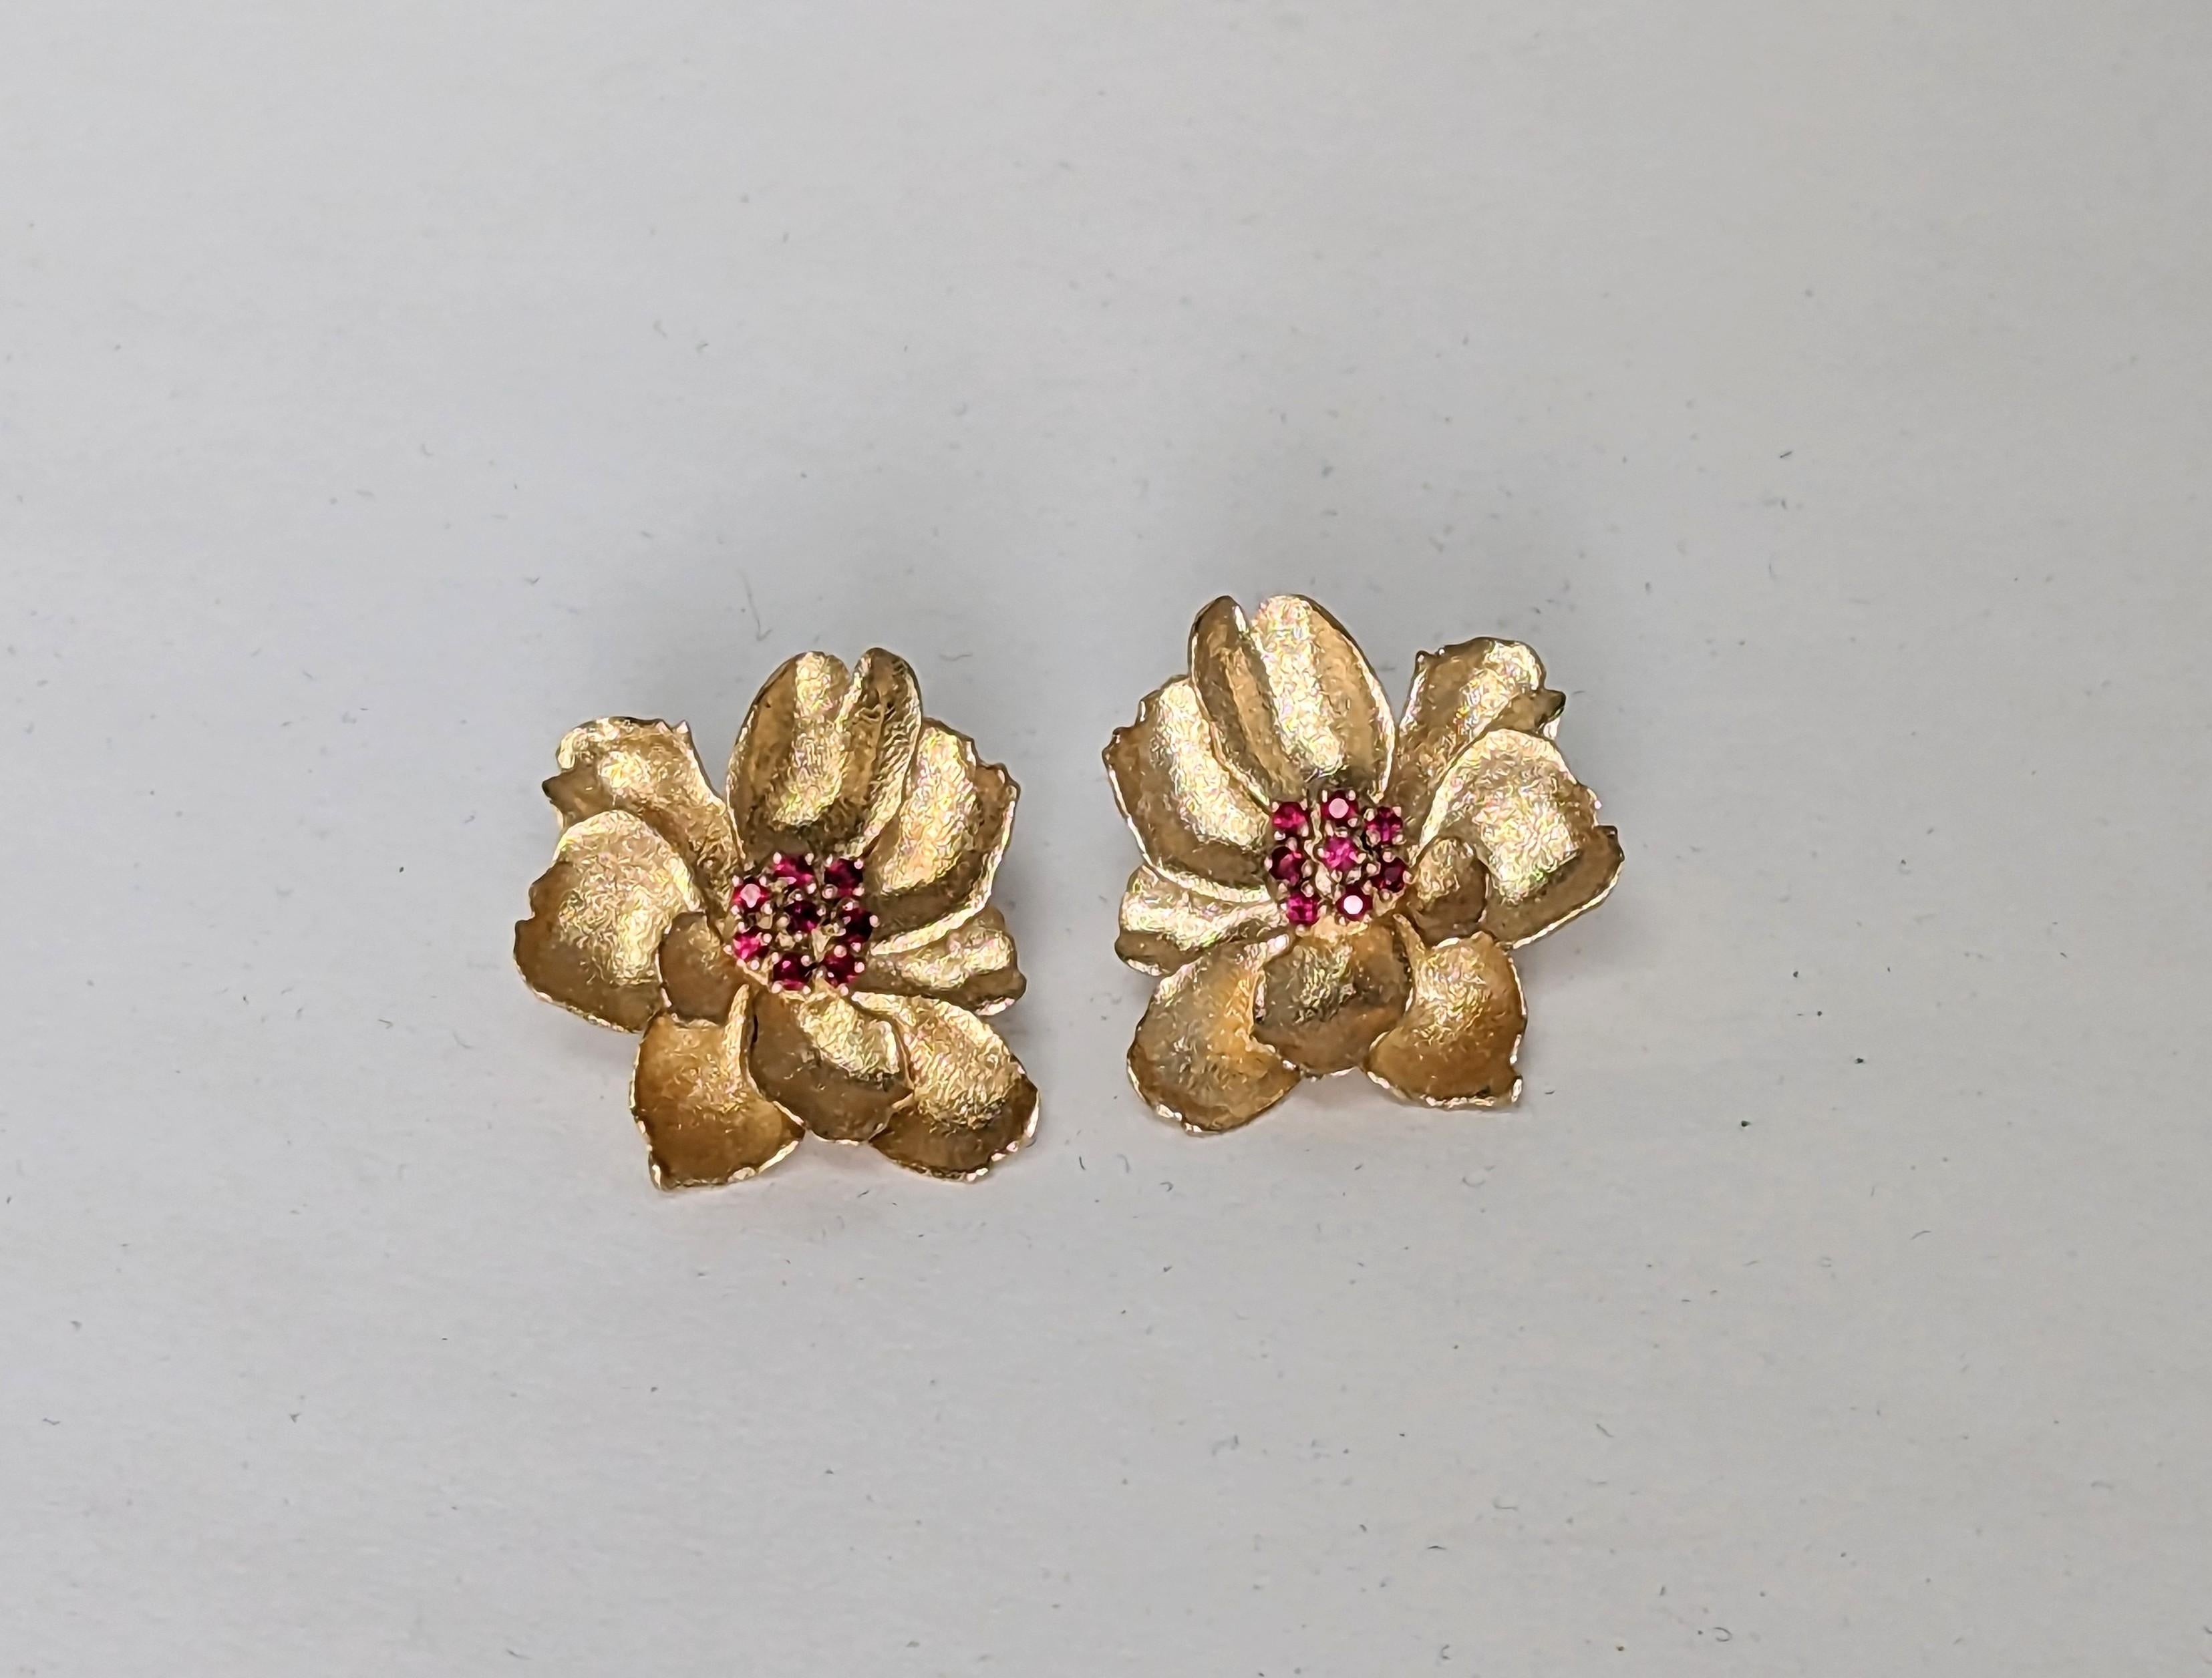 0 Karat Weißgold Wildblumen-Ohrringe mit Rubinen, die der Tiffany-Designer Thomas Kurilla exklusiv für 1stdibs entworfen hat. Langeweile bringt uns dazu, uns selbst herauszufordern. Arbeiten aus dem Leben, insbesondere während der  Virus könnte uns